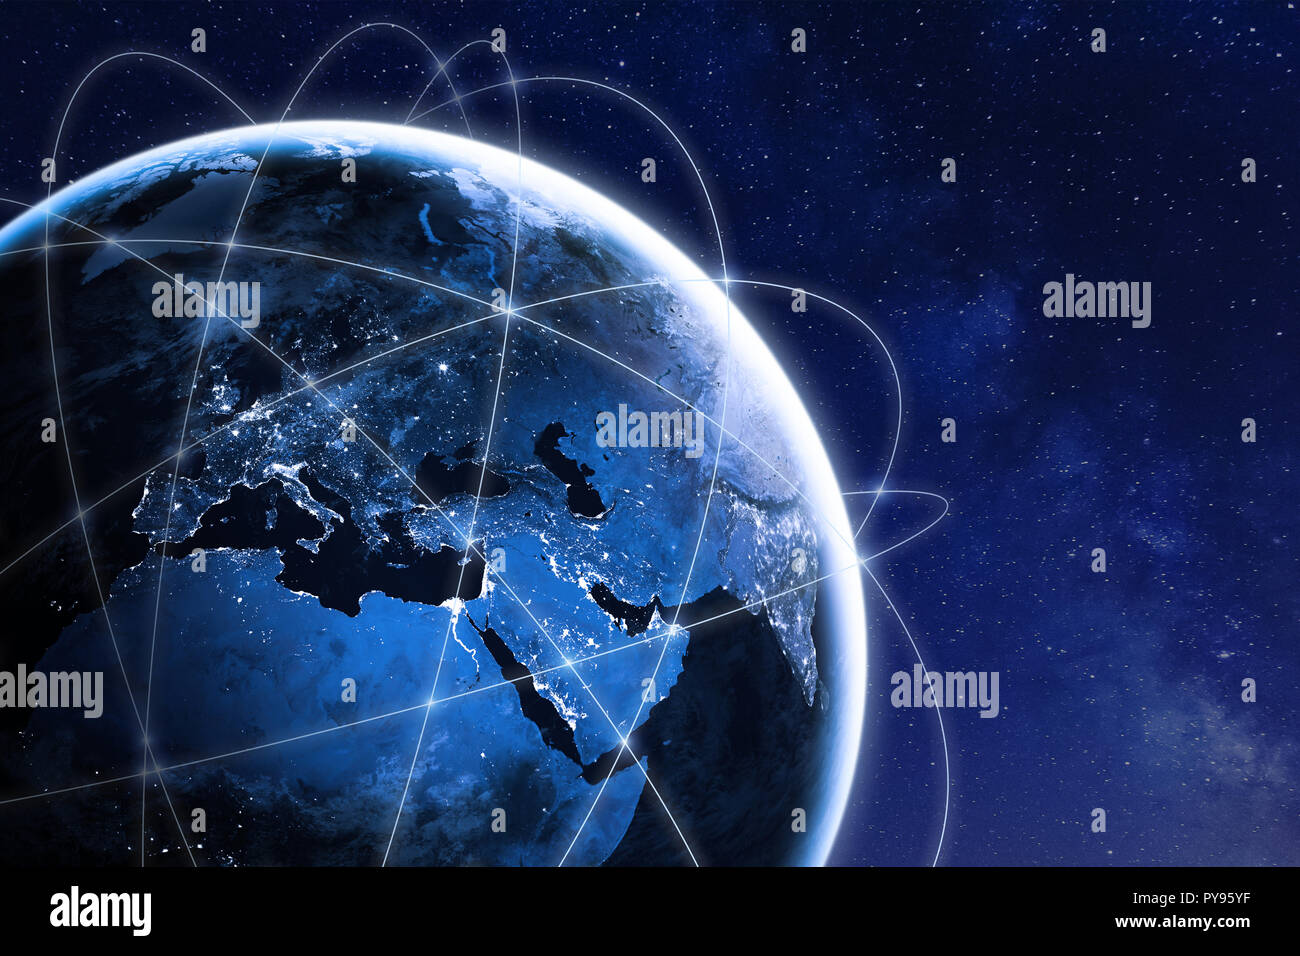 Globale Konnektivität Konzept mit der weltweiten Kommunikation Netzwerkverbindung Linien rund um den Planeten Erde vom Weltraum aus gesehen, Umlaufbahn, die Lichter der Stadt Stockfoto